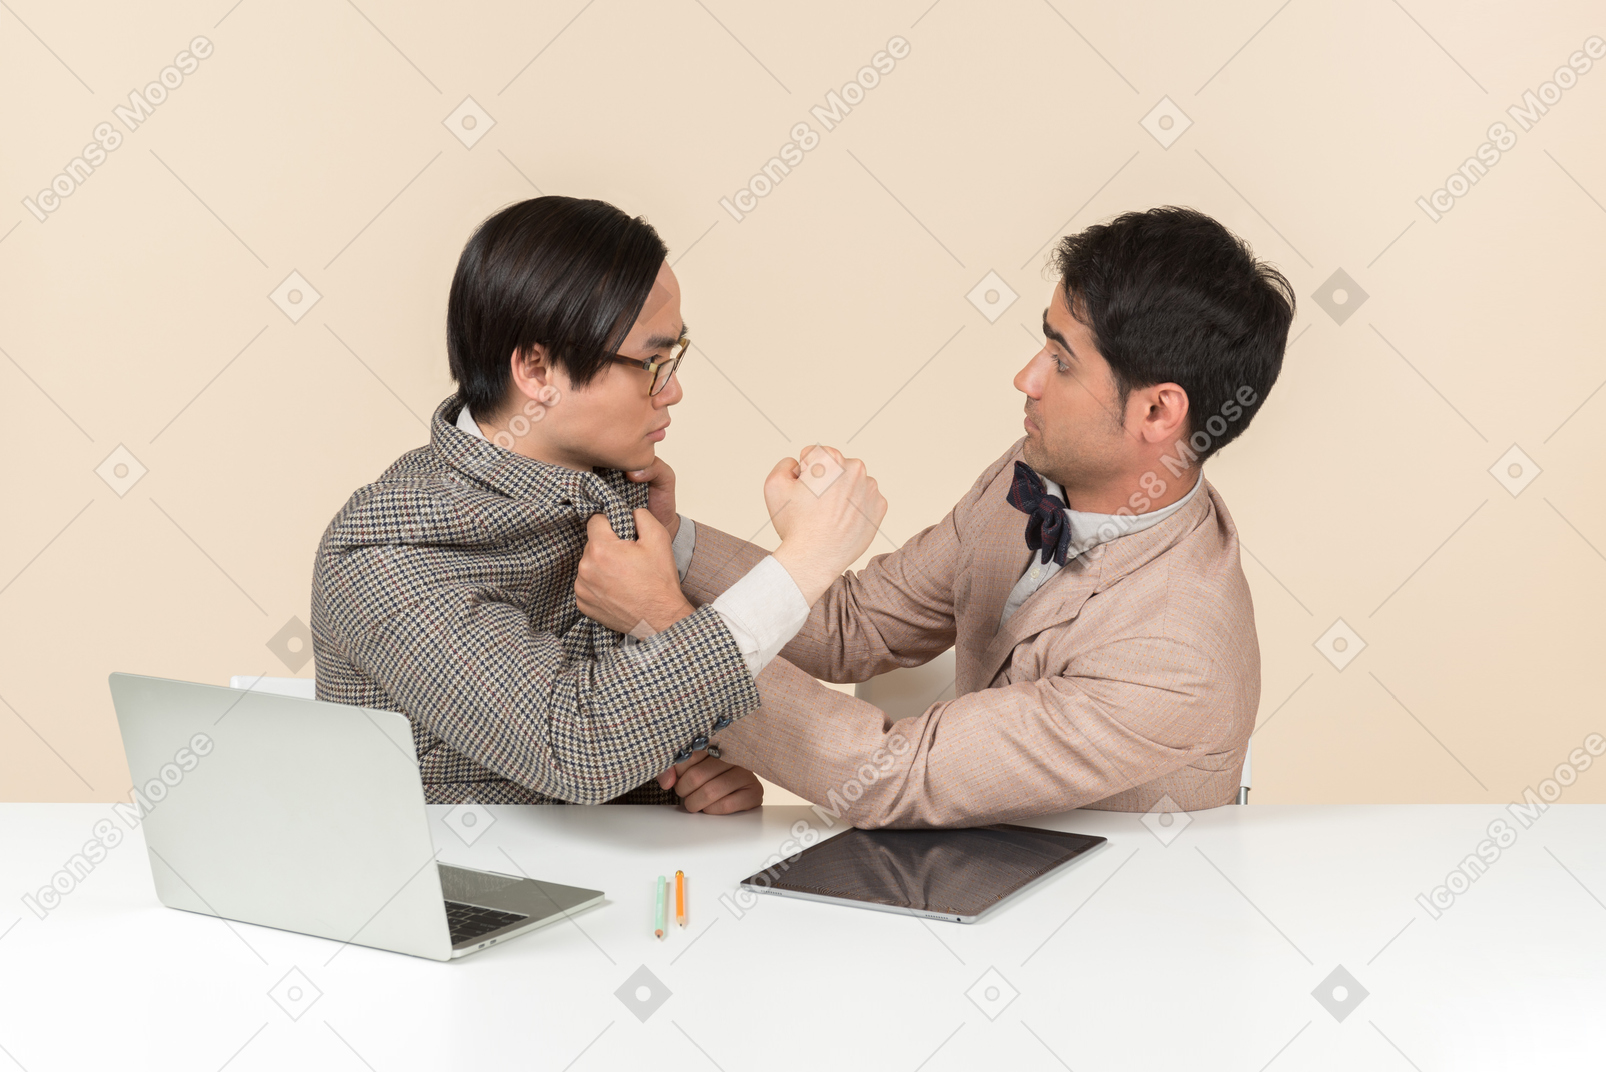 Zwei junge nerds sitzen am tisch und schlagen sich gegenseitig ins gesicht